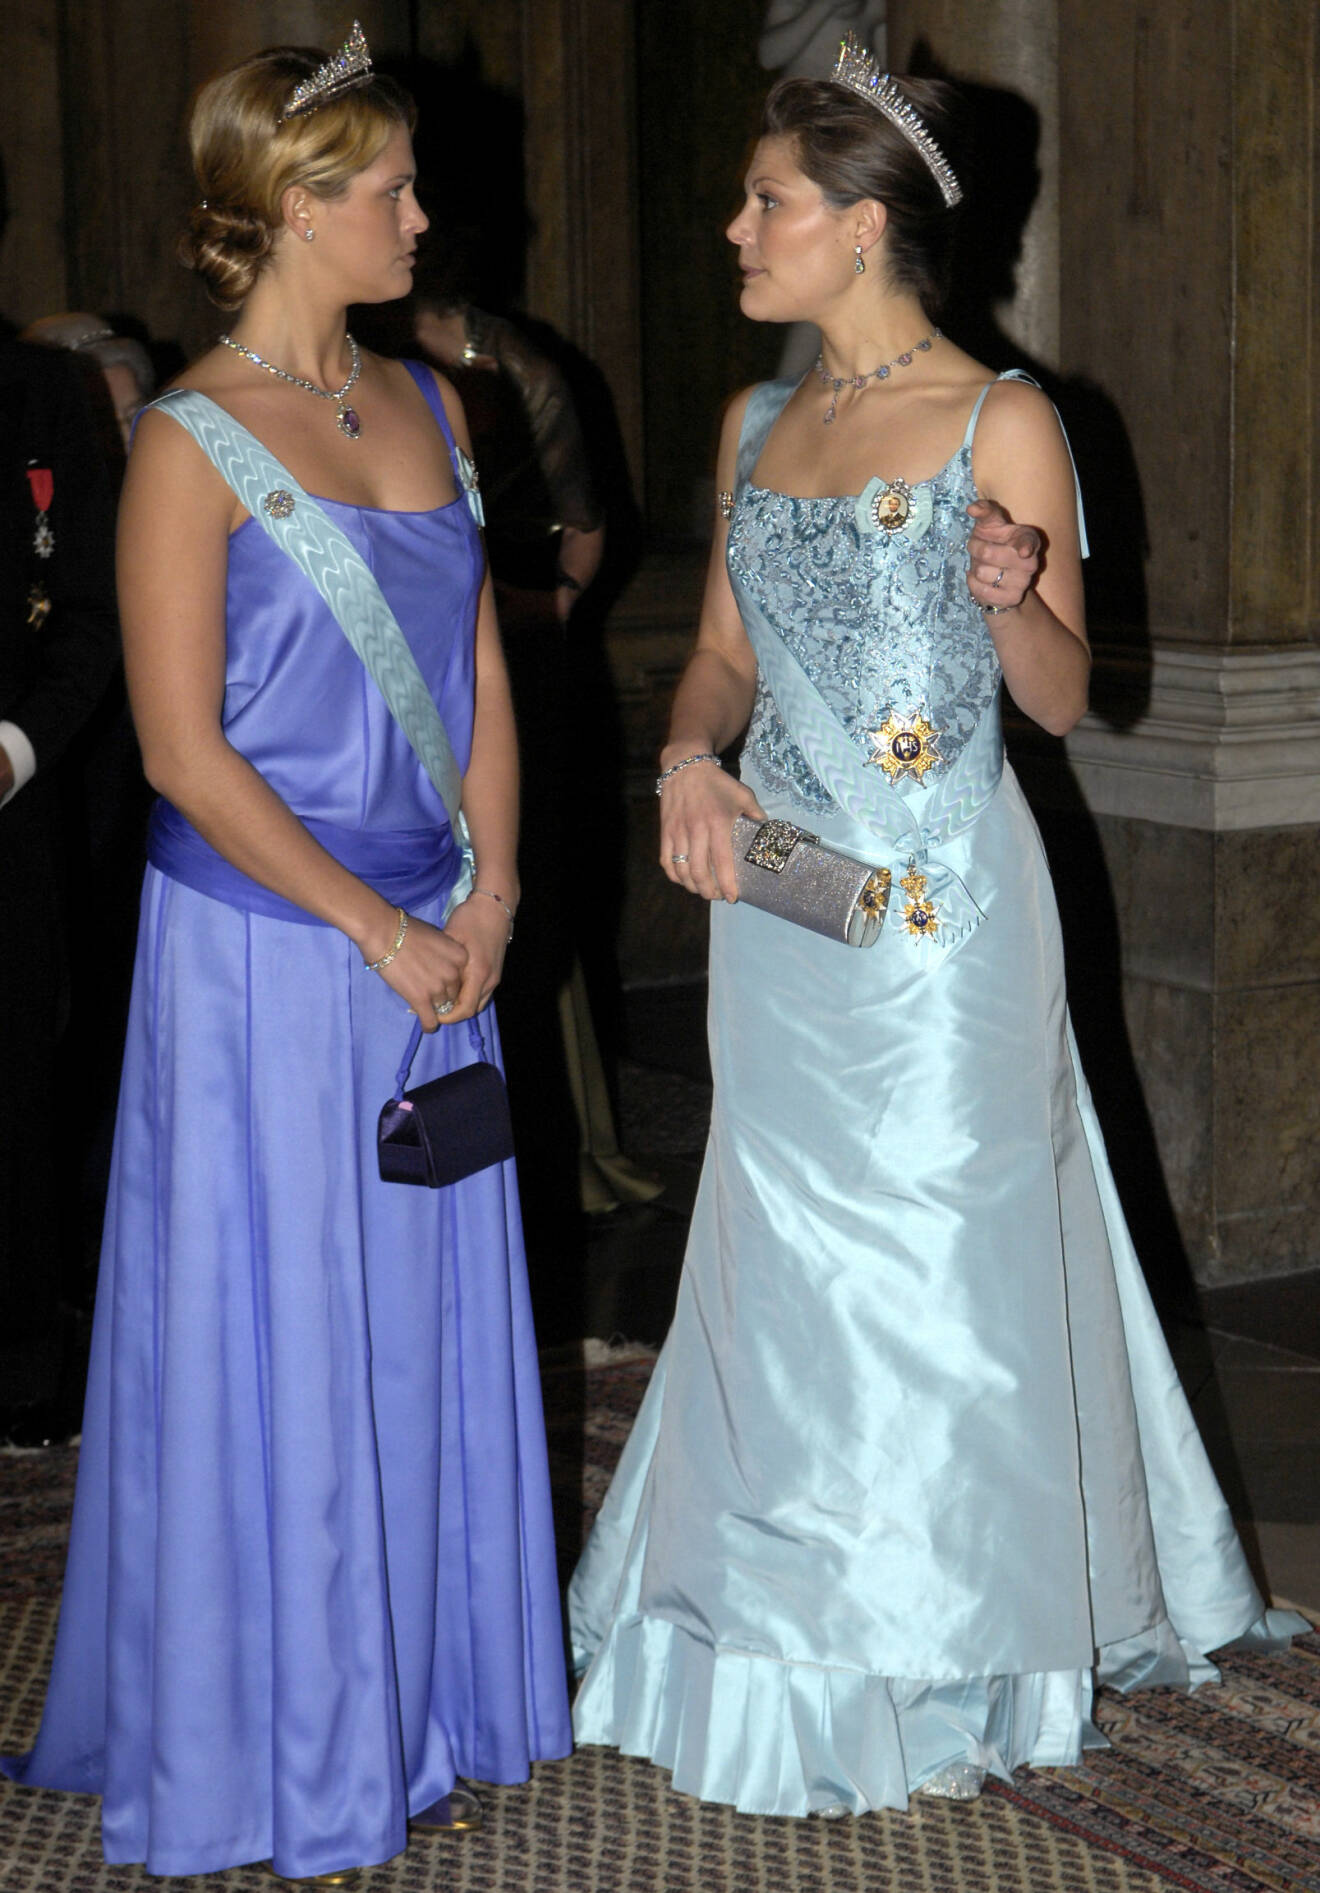 Prinsessan Madeleine och kronprinsessan Victoria under kungamiddagen på slottet i Stockholm 2006.